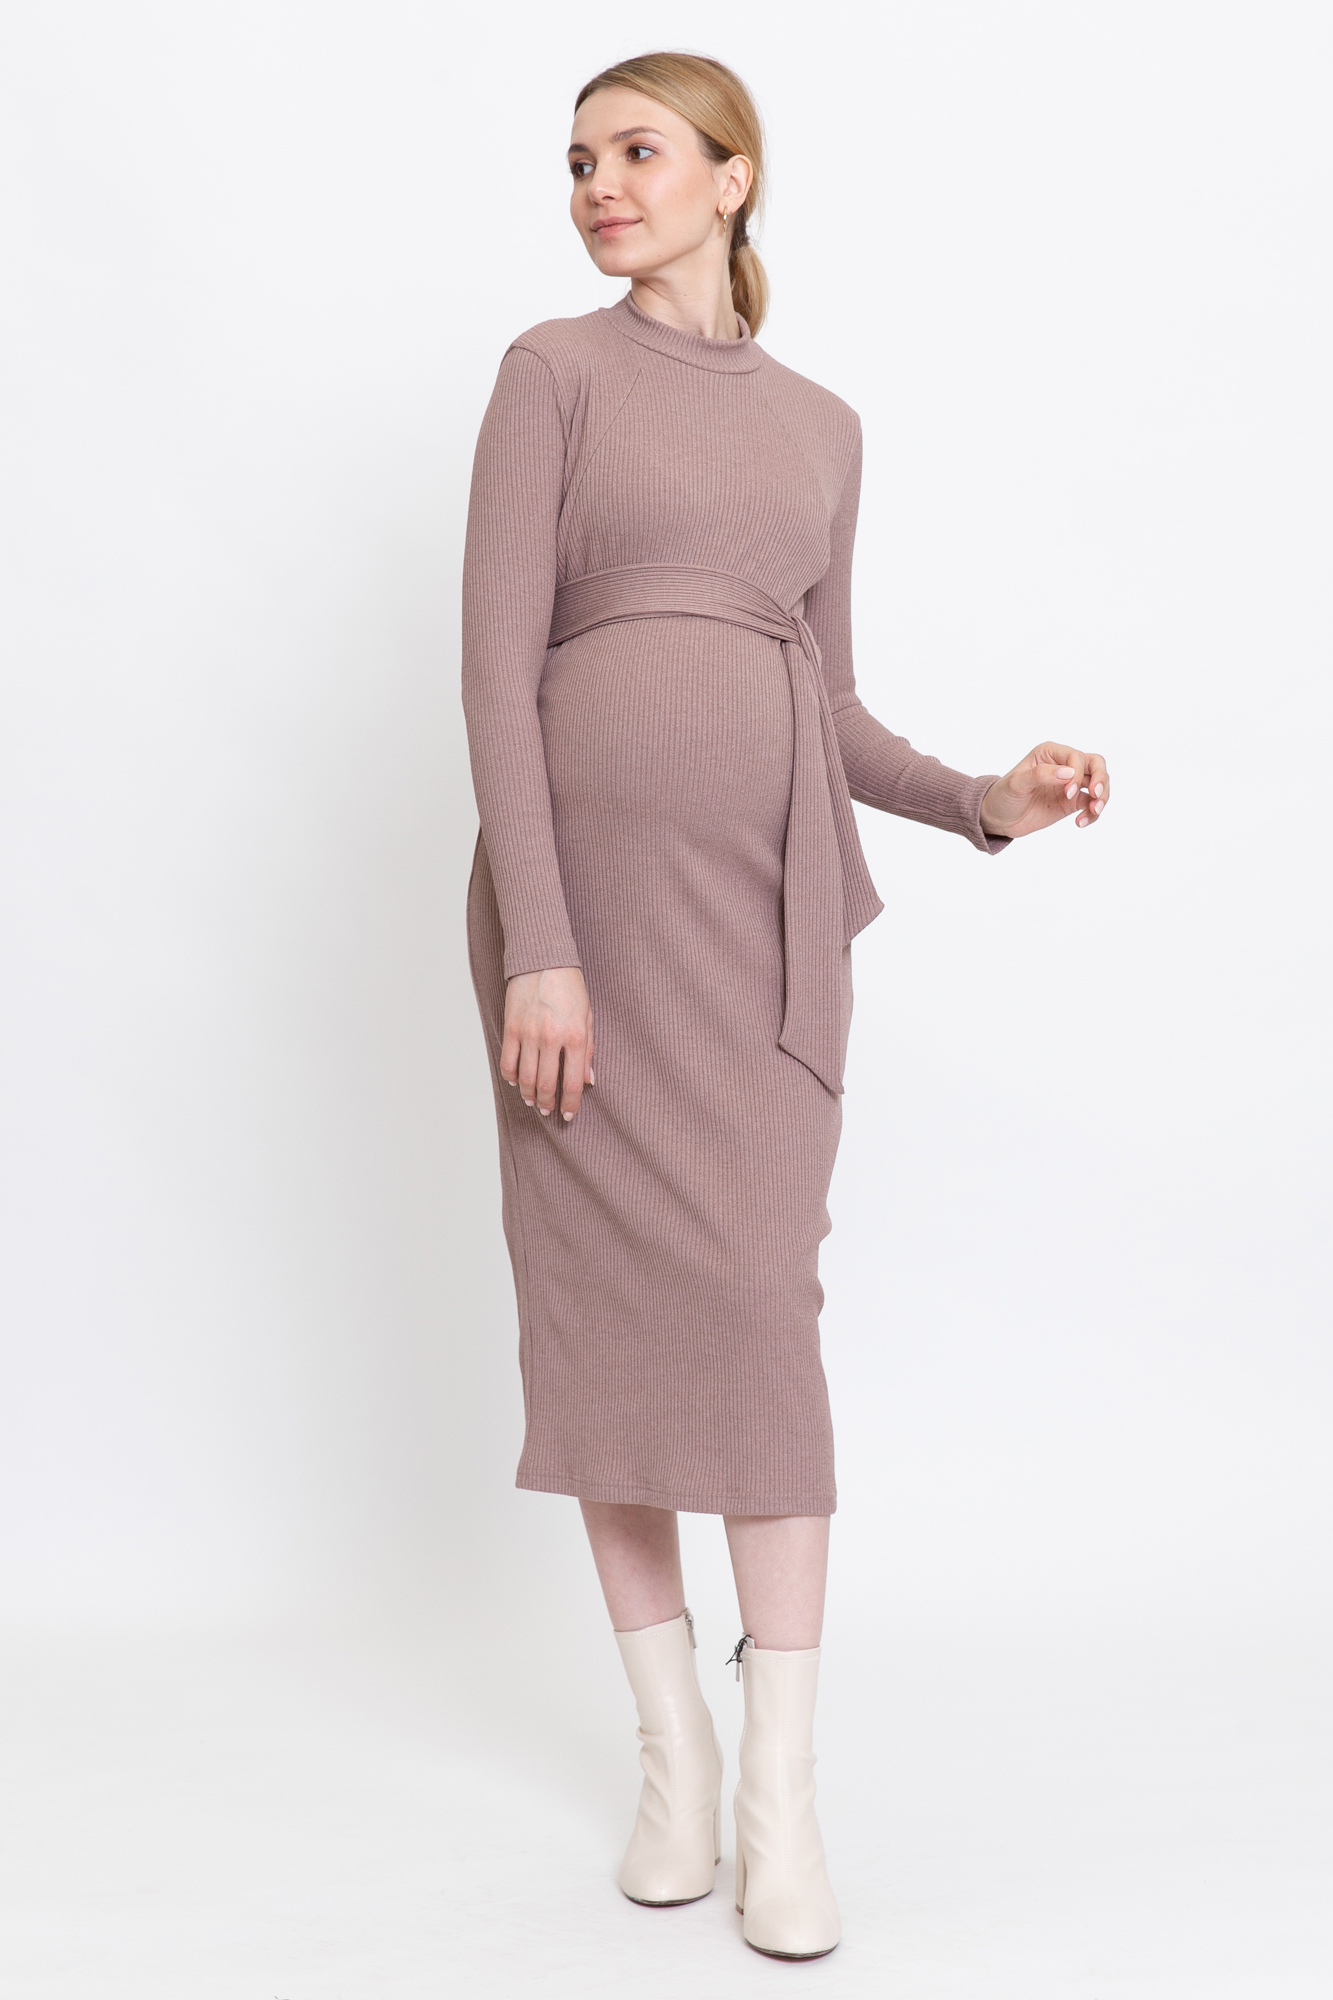 Платье для беременных женское Magica bellezza 0178а коричневое 52 RU